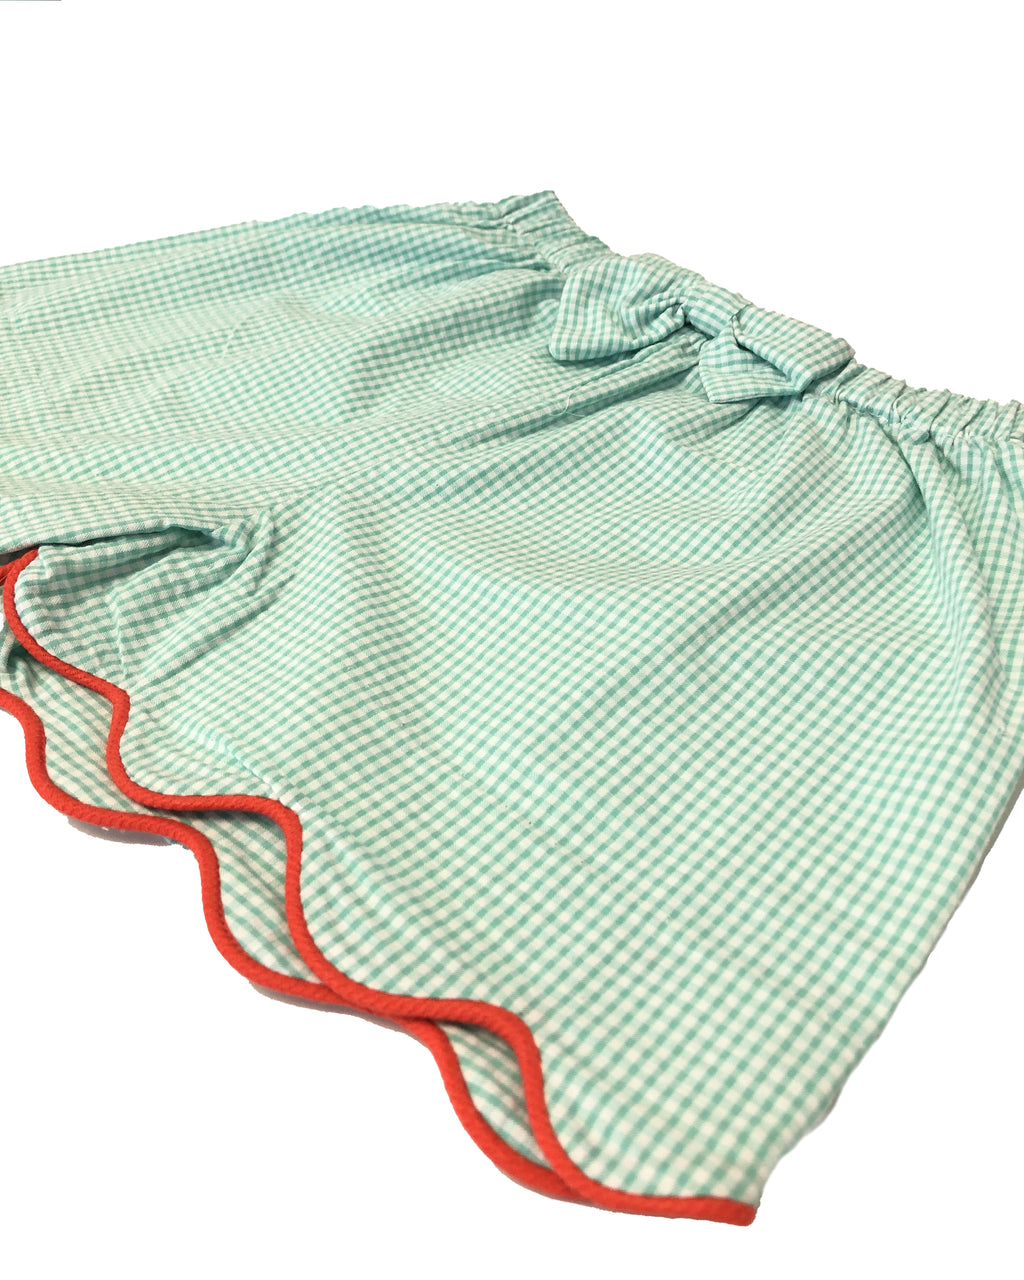 Green Checks Girl's Shorts - Little Threads Inc. Children's Clothing